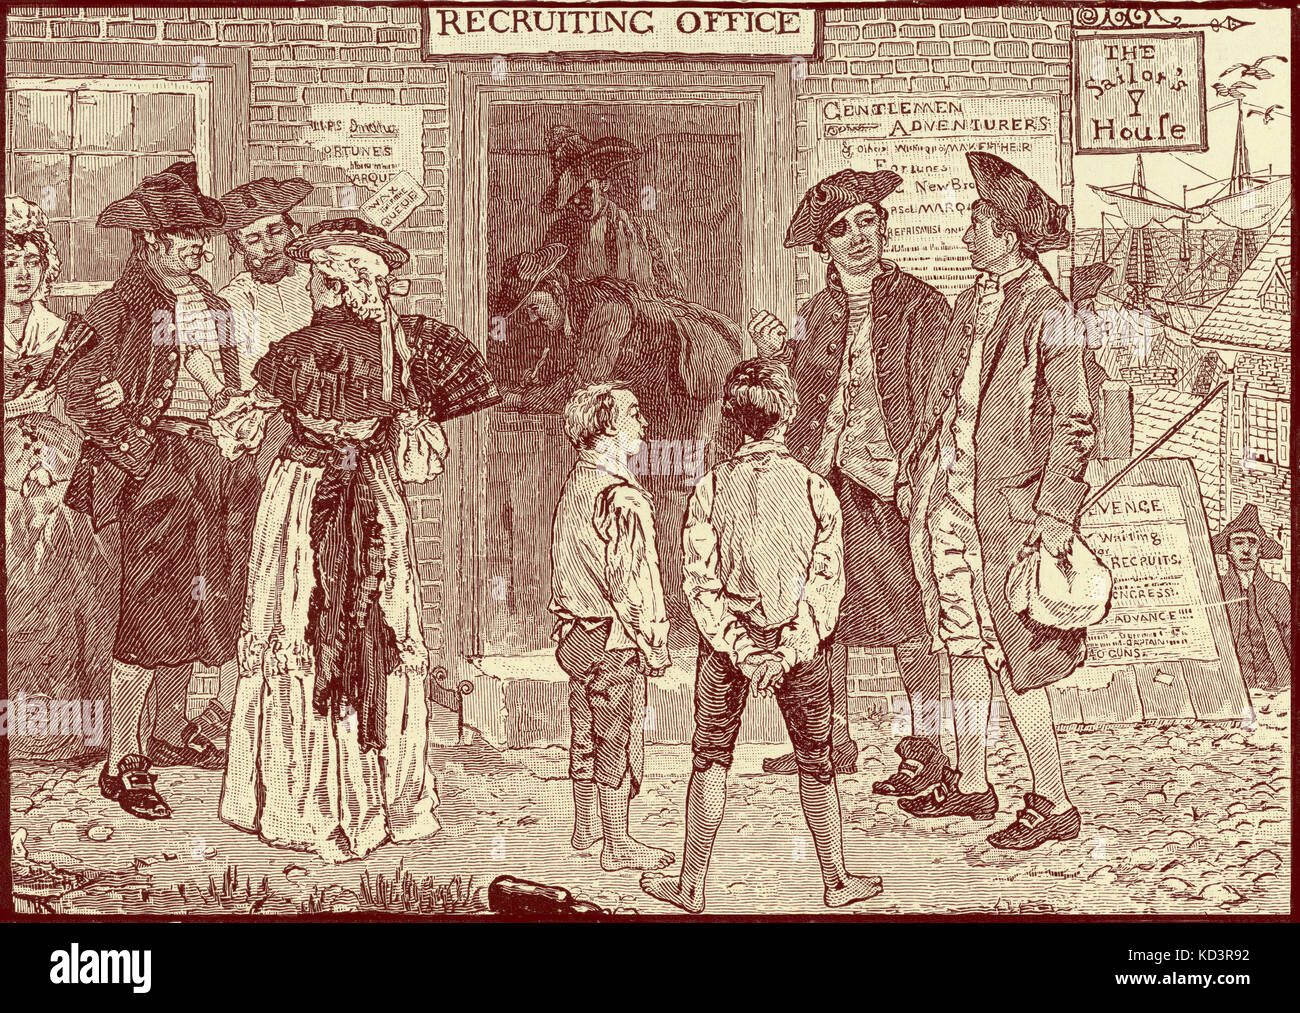 Ufficio di recruiting rivoluzionario per i privaters americani, New London, Connecticut. Rivoluzione americana, 1765 - 1783. Illustrazione di Howard Pyle, 1896 Foto Stock